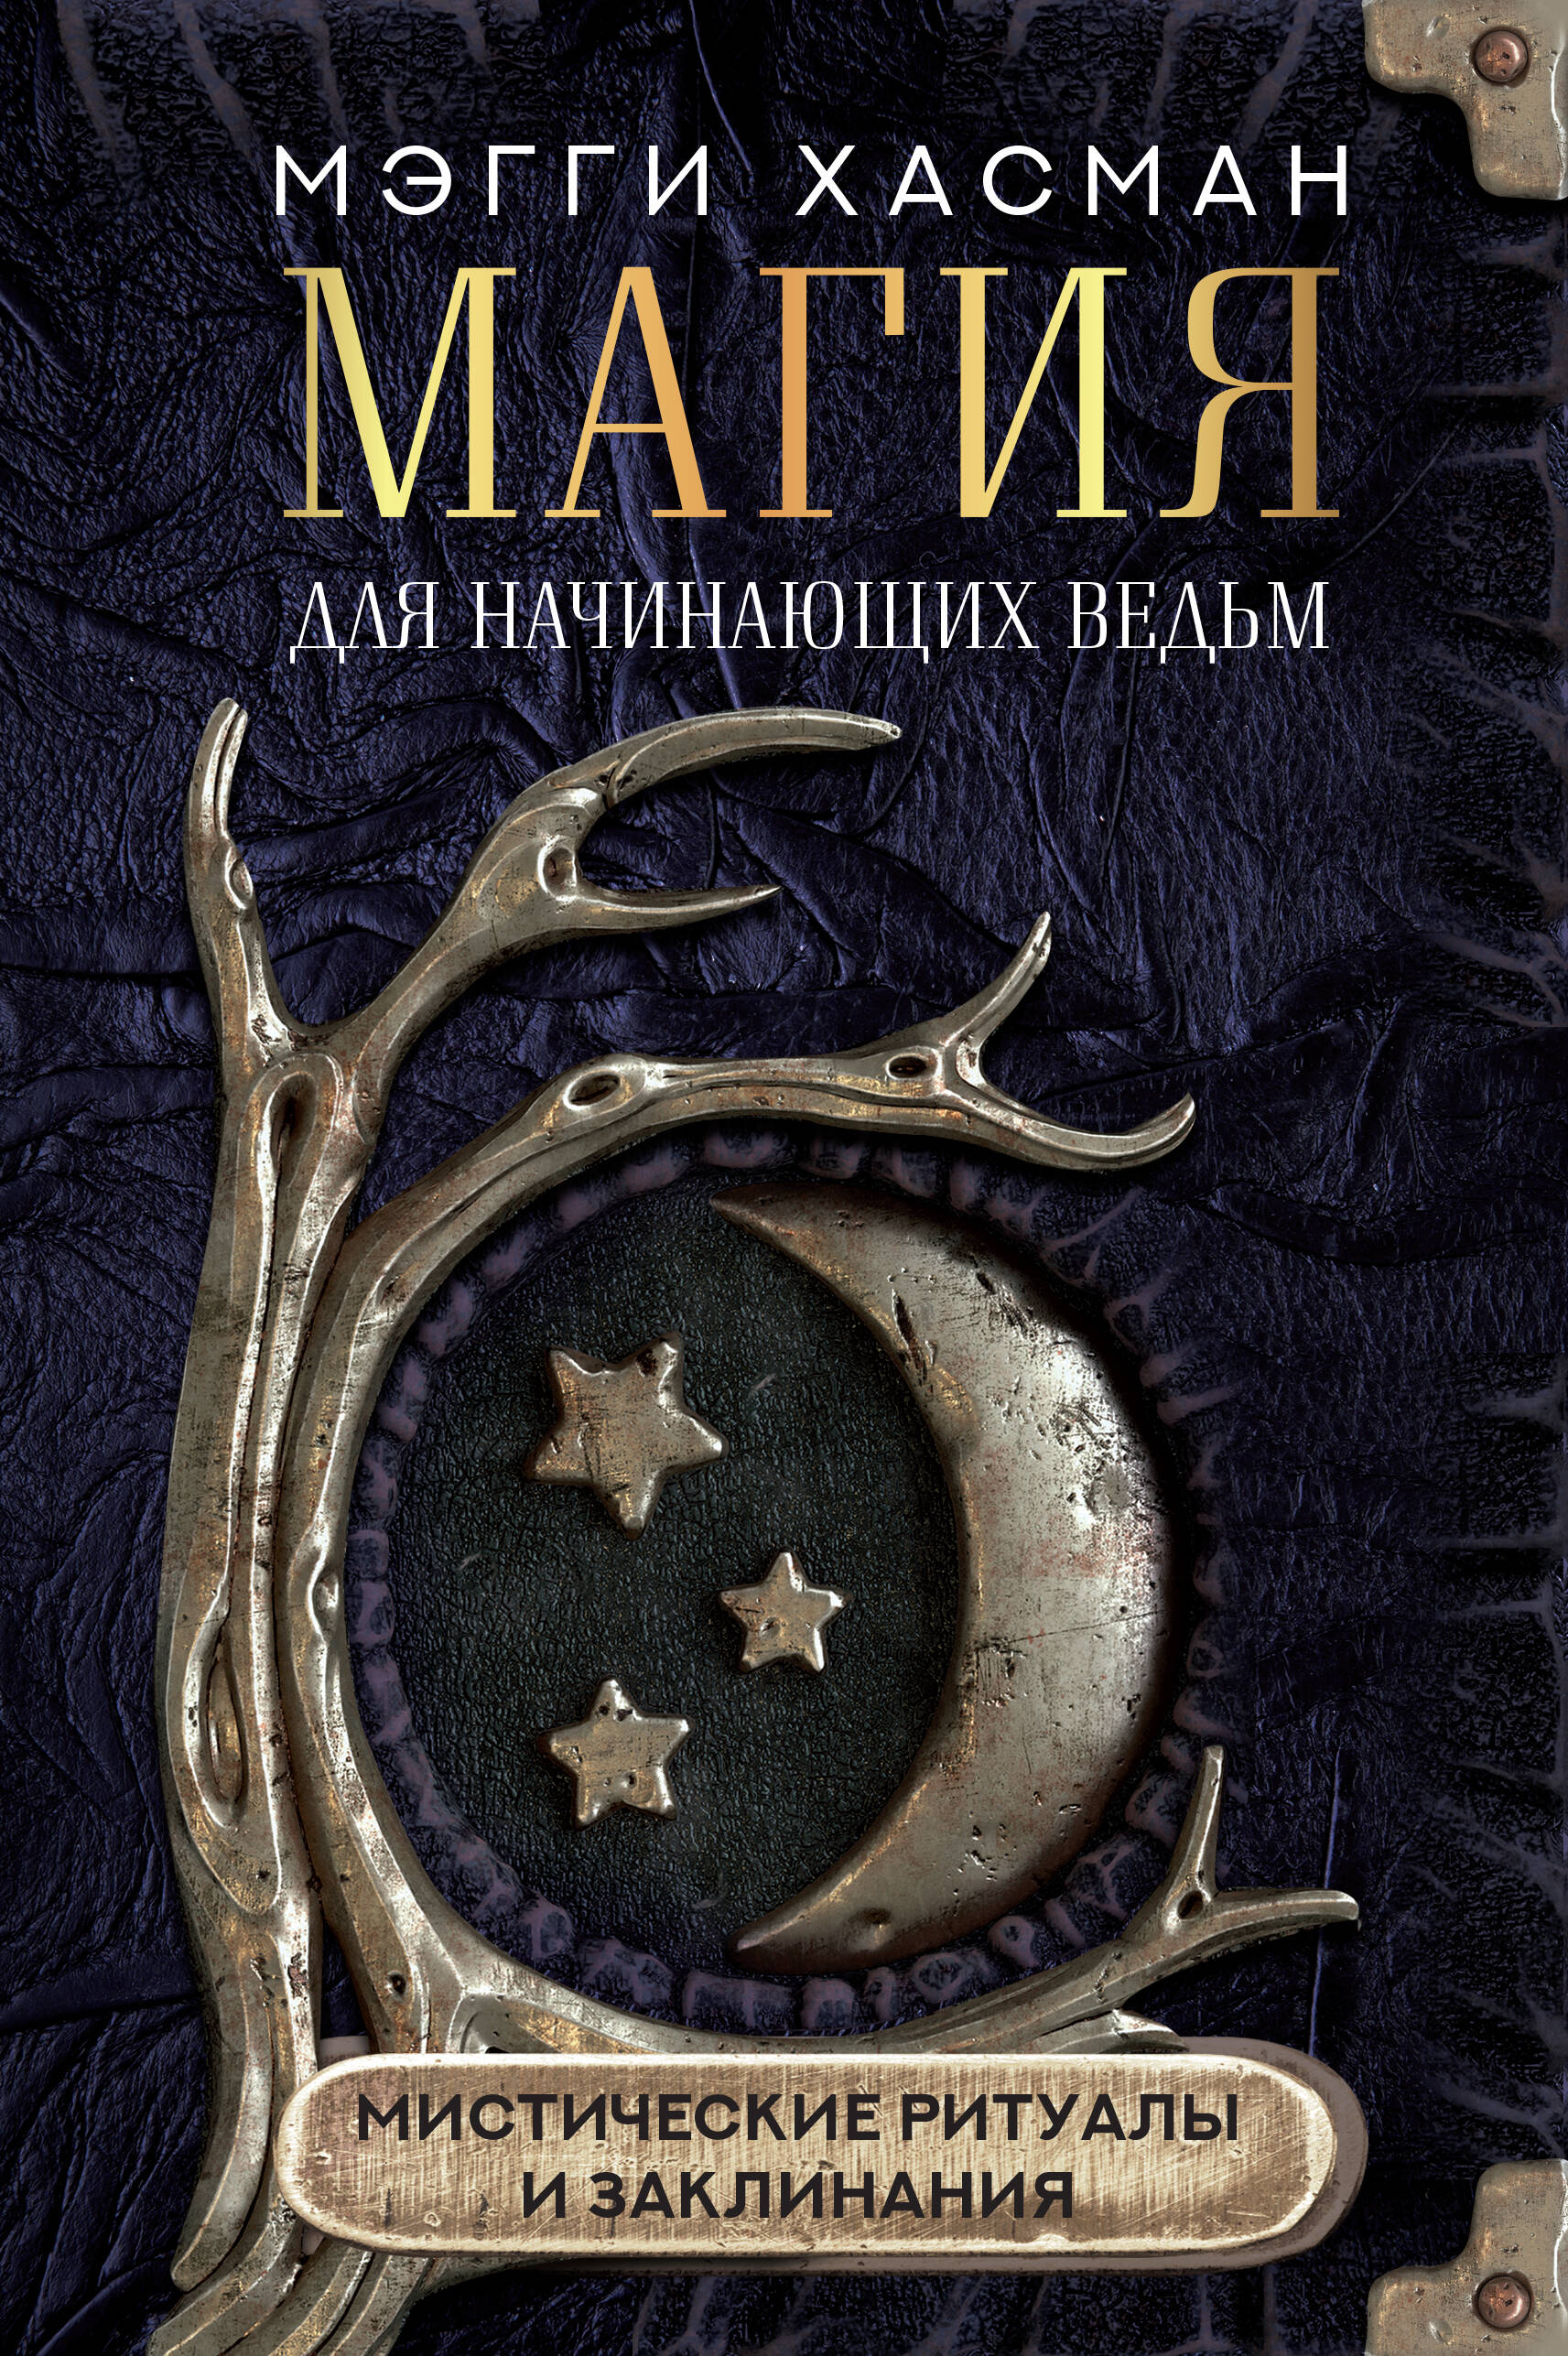 Хасман Мэгги Магия для начинающих ведьм: мистические ритуалы и заклинания уильямс б практическая магия для начинающих техники и ритуалы для фокусирования энергии